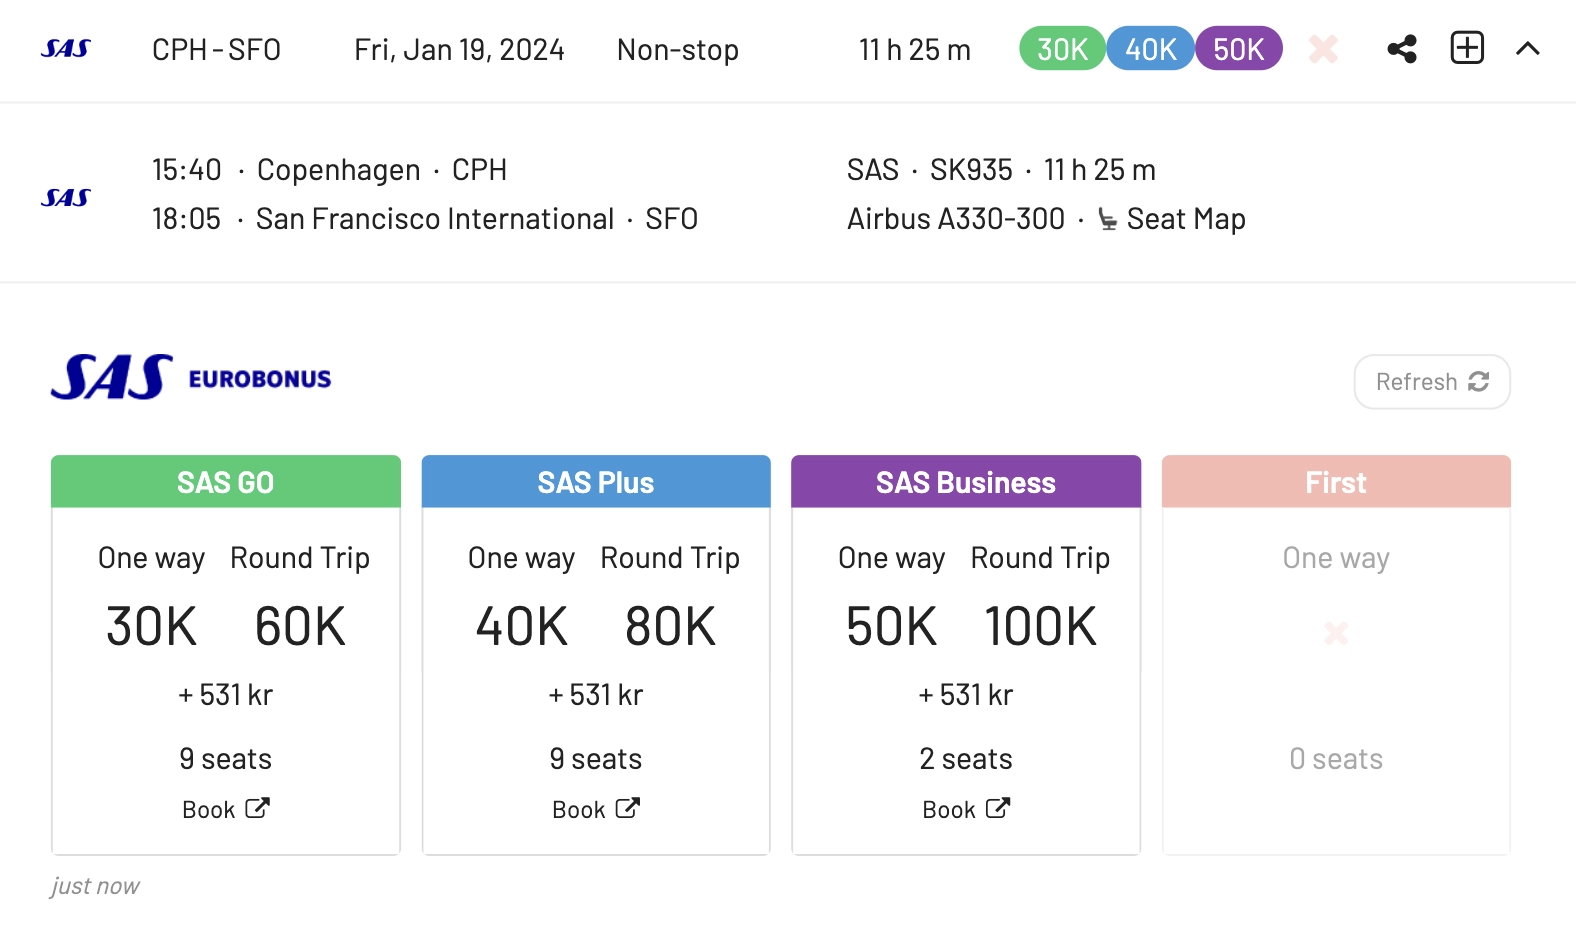 Scandinavia to San Francisco with SAS EuroBonus Points (AwardFares).